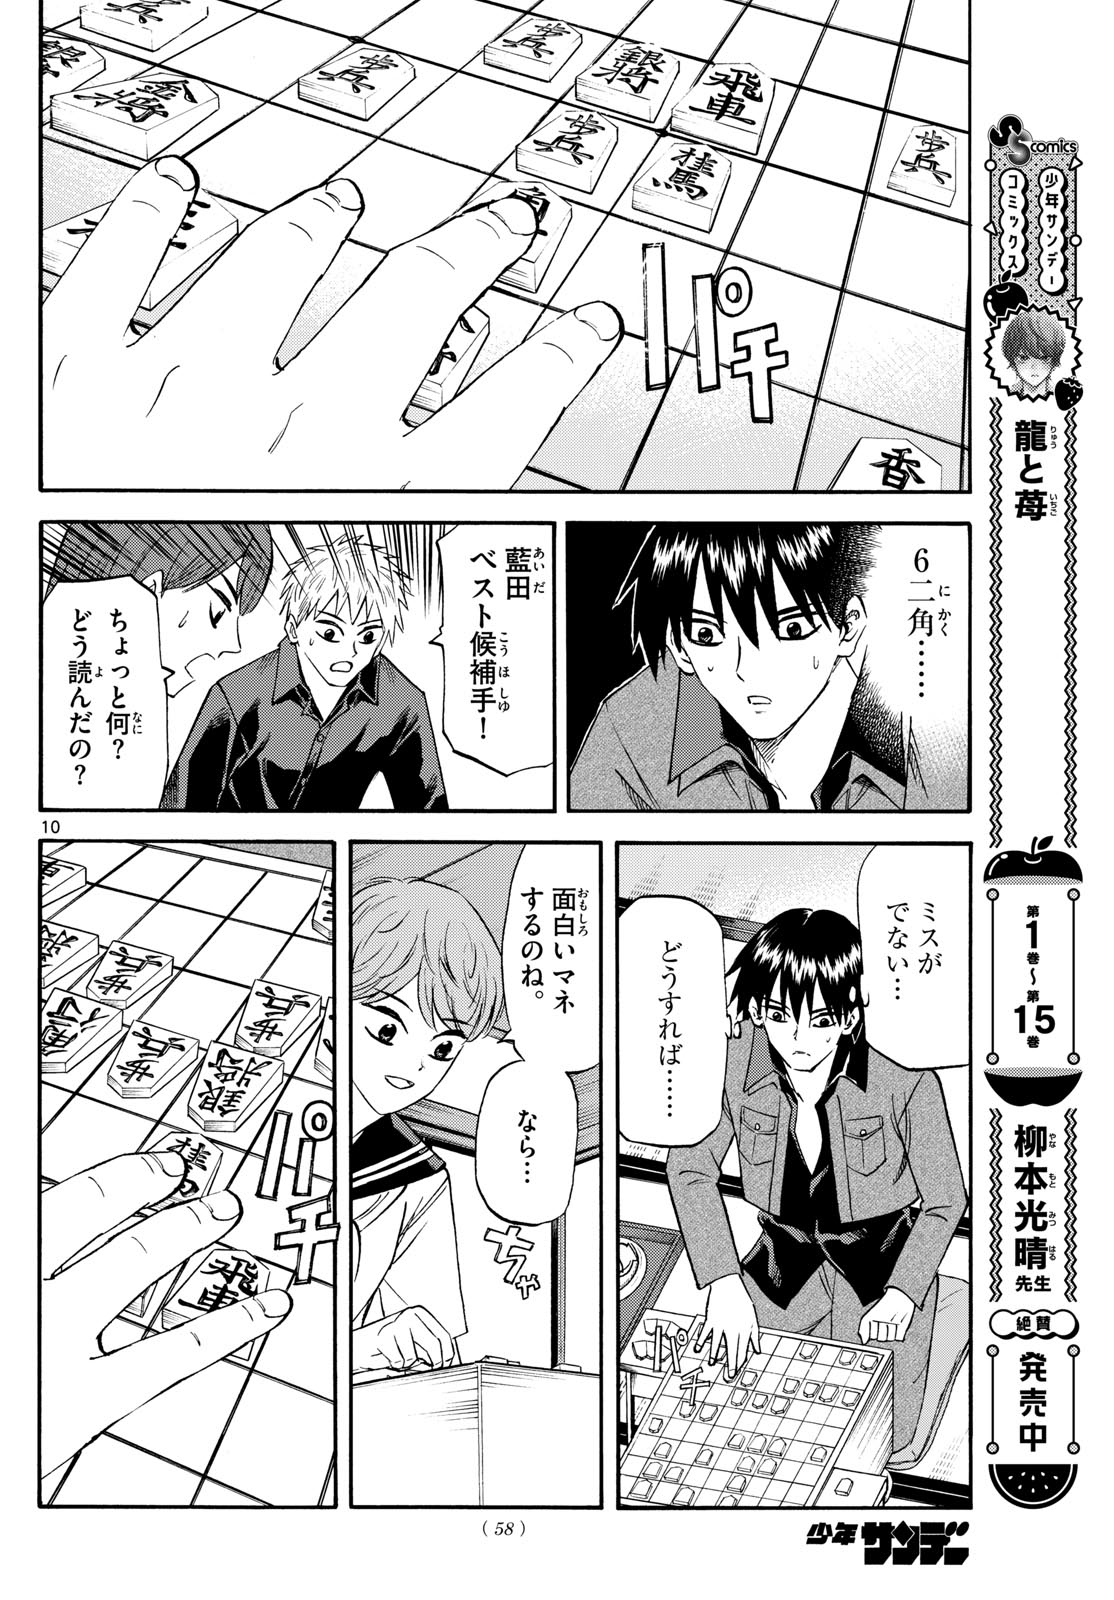 Tatsu to Ichigo - Chapter 194 - Page 10